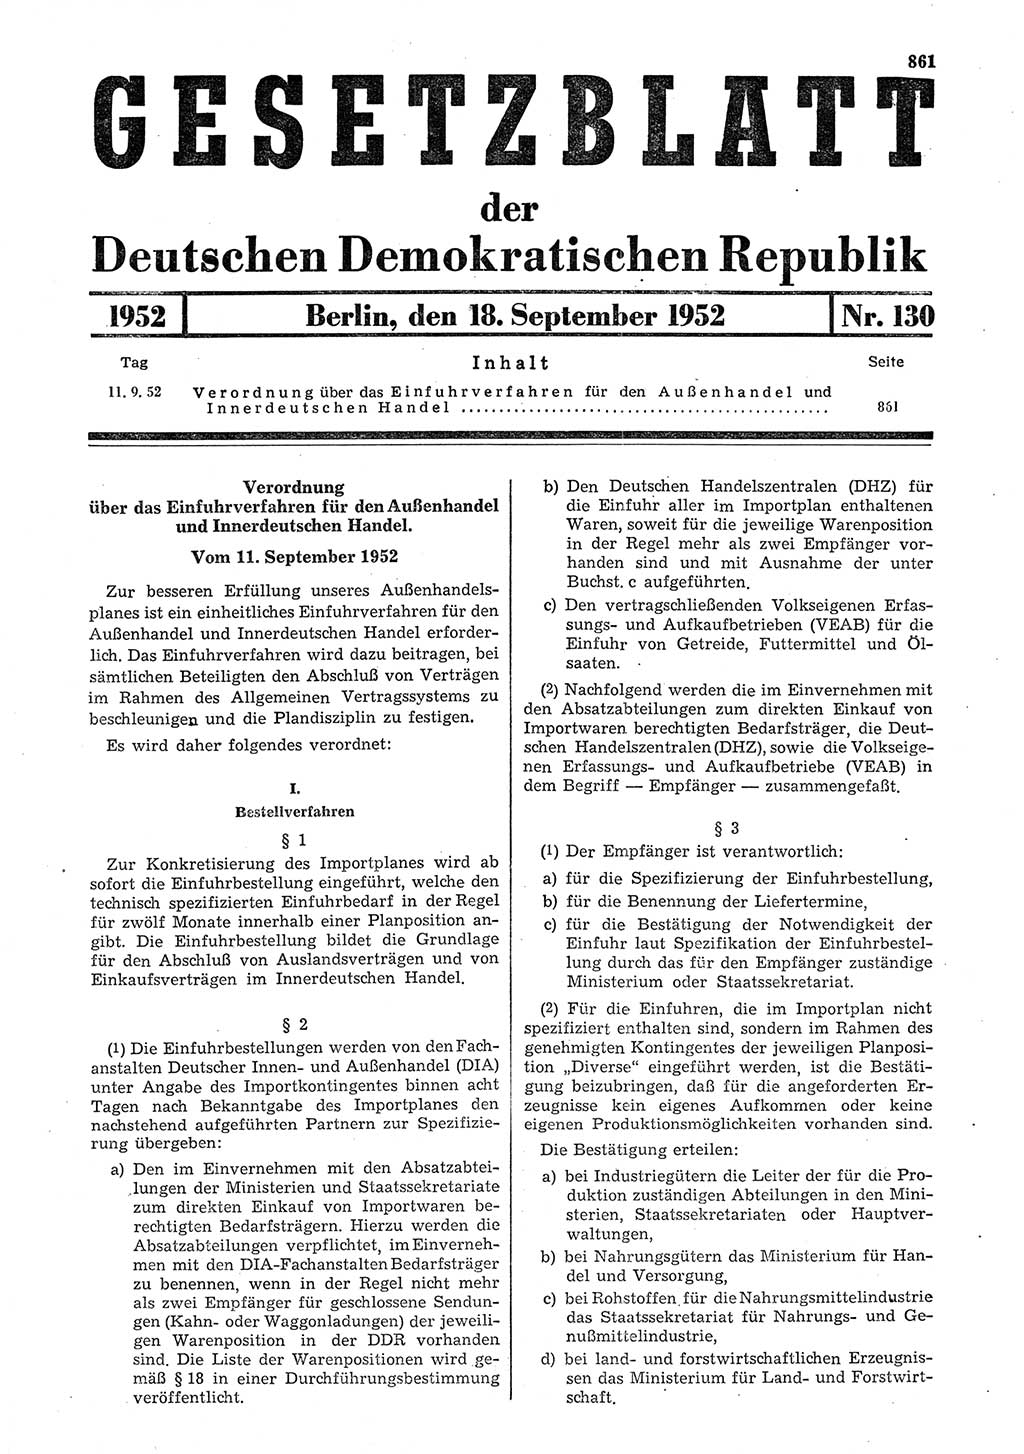 Gesetzblatt (GBl.) der Deutschen Demokratischen Republik (DDR) 1952, Seite 861 (GBl. DDR 1952, S. 861)